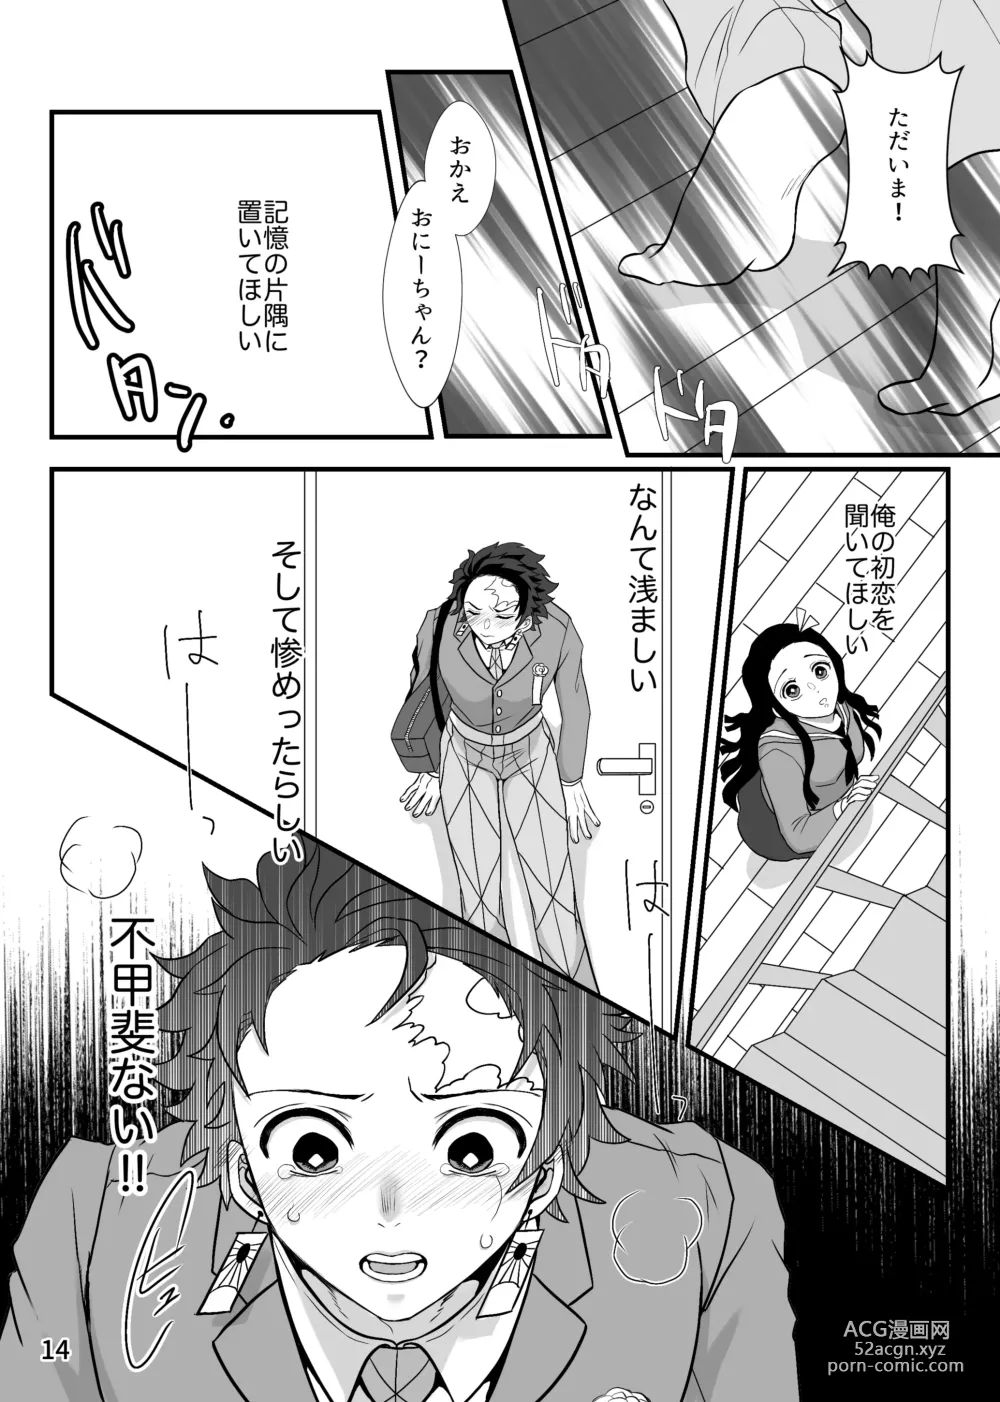 Page 14 of doujinshi Kono Gekijou o Shirazu ni